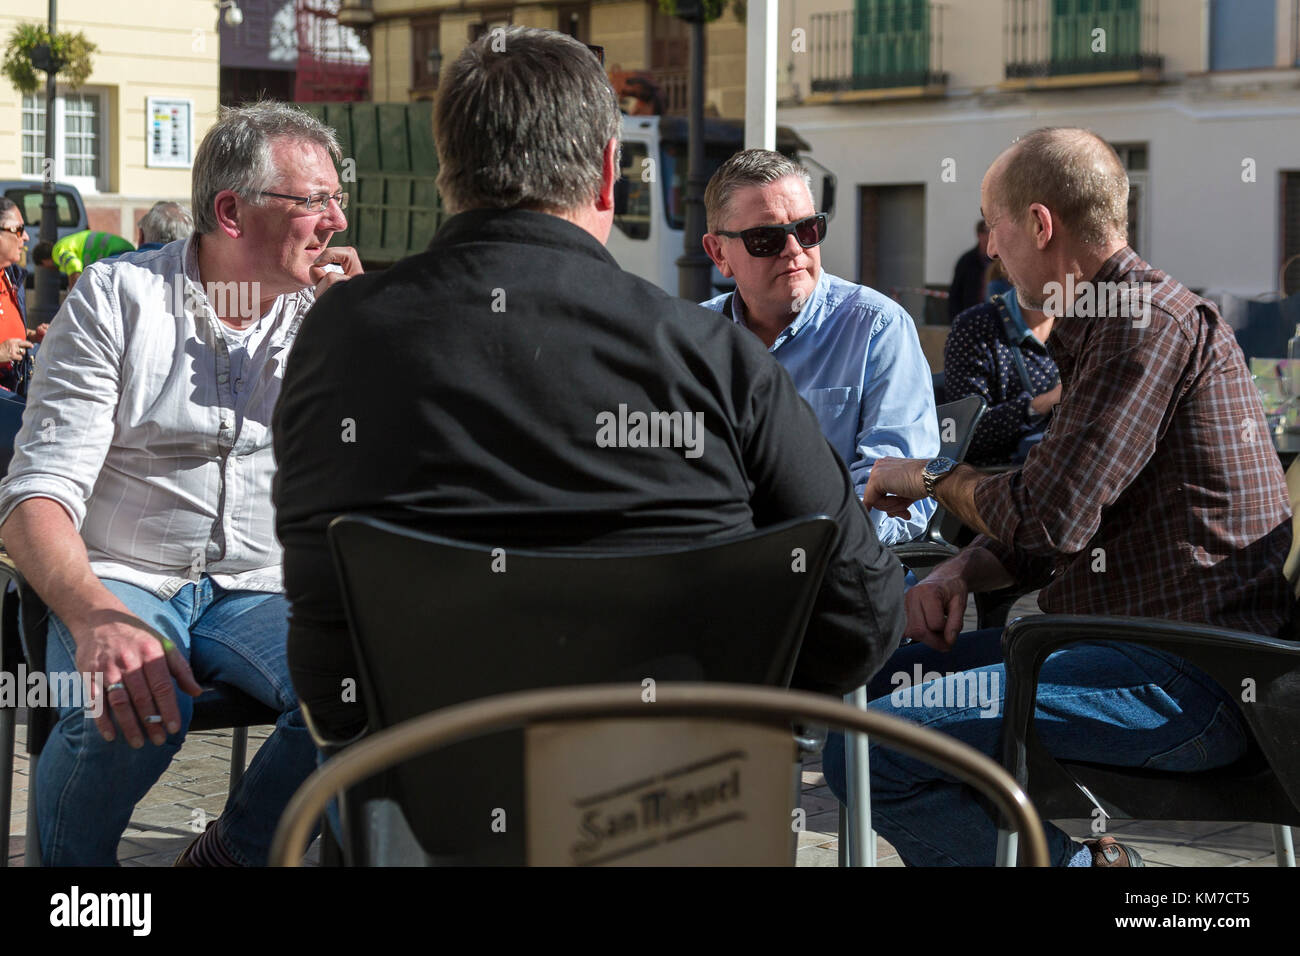 Gruppe von 4 Männer mittleren Alters im Gespräch in einem Cafe Tabelle in Malaga Spanien Stockfoto